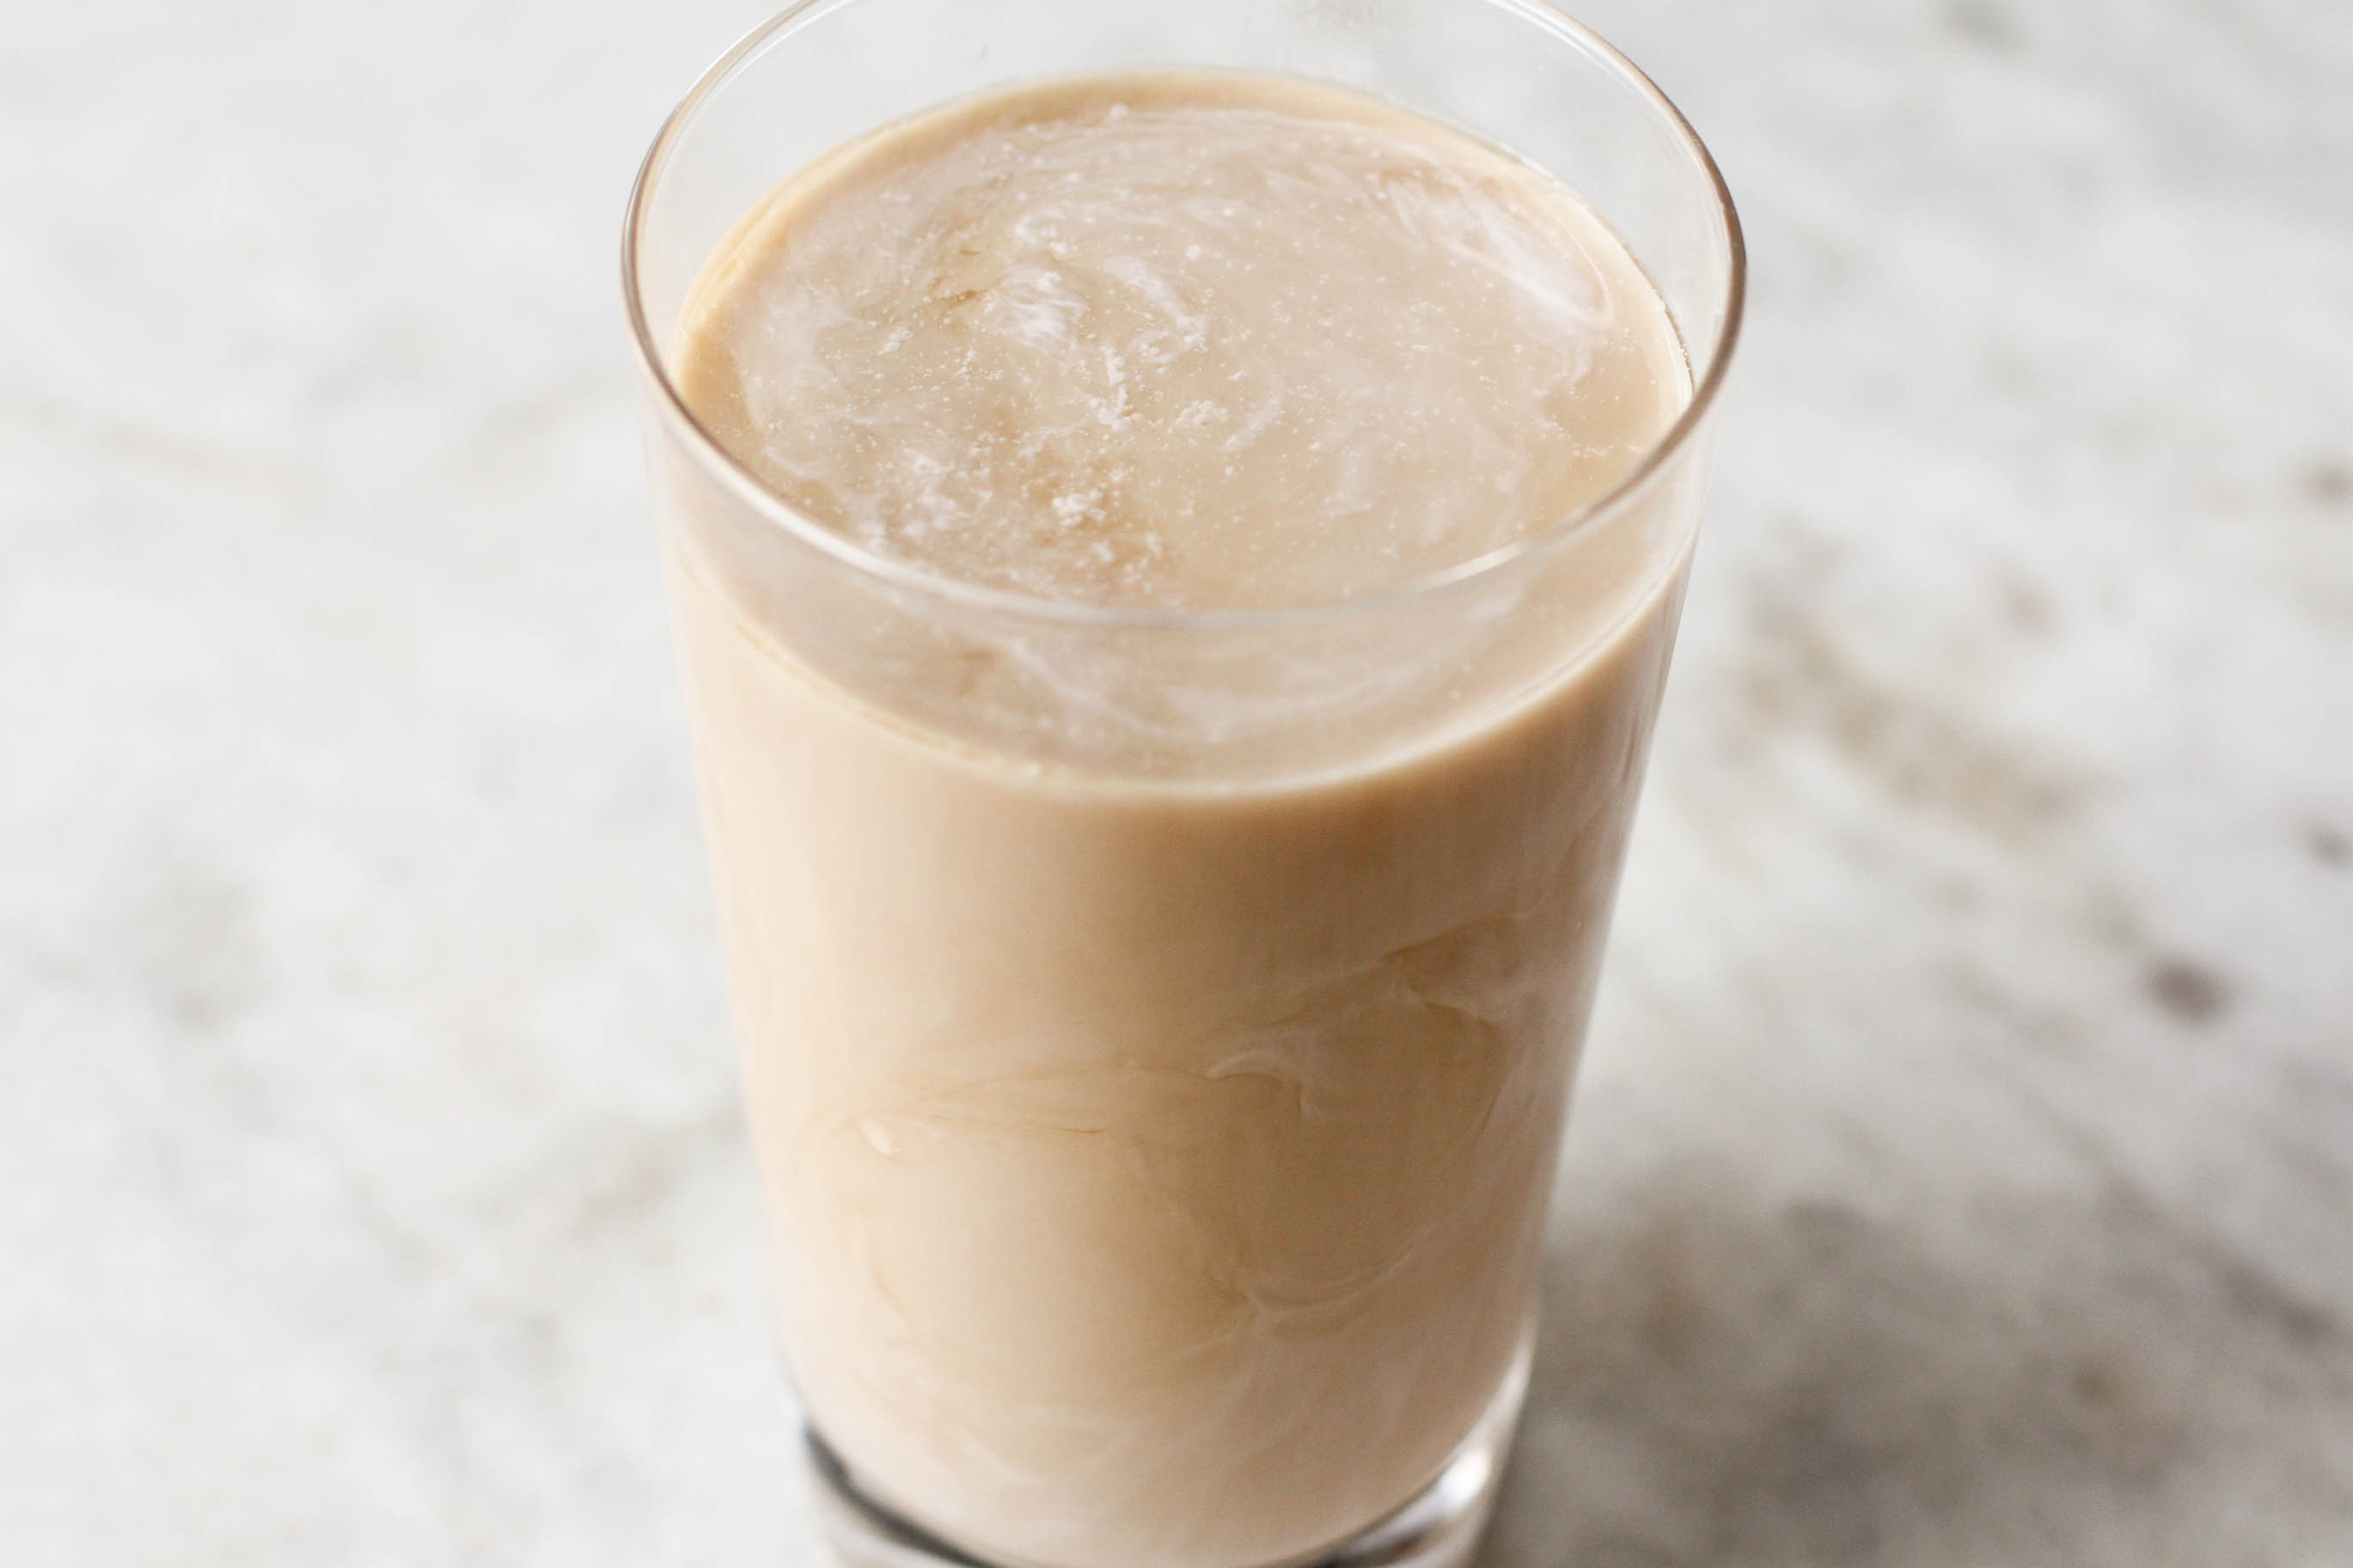 5 Ways to Make Iced Coffee - wikiHow